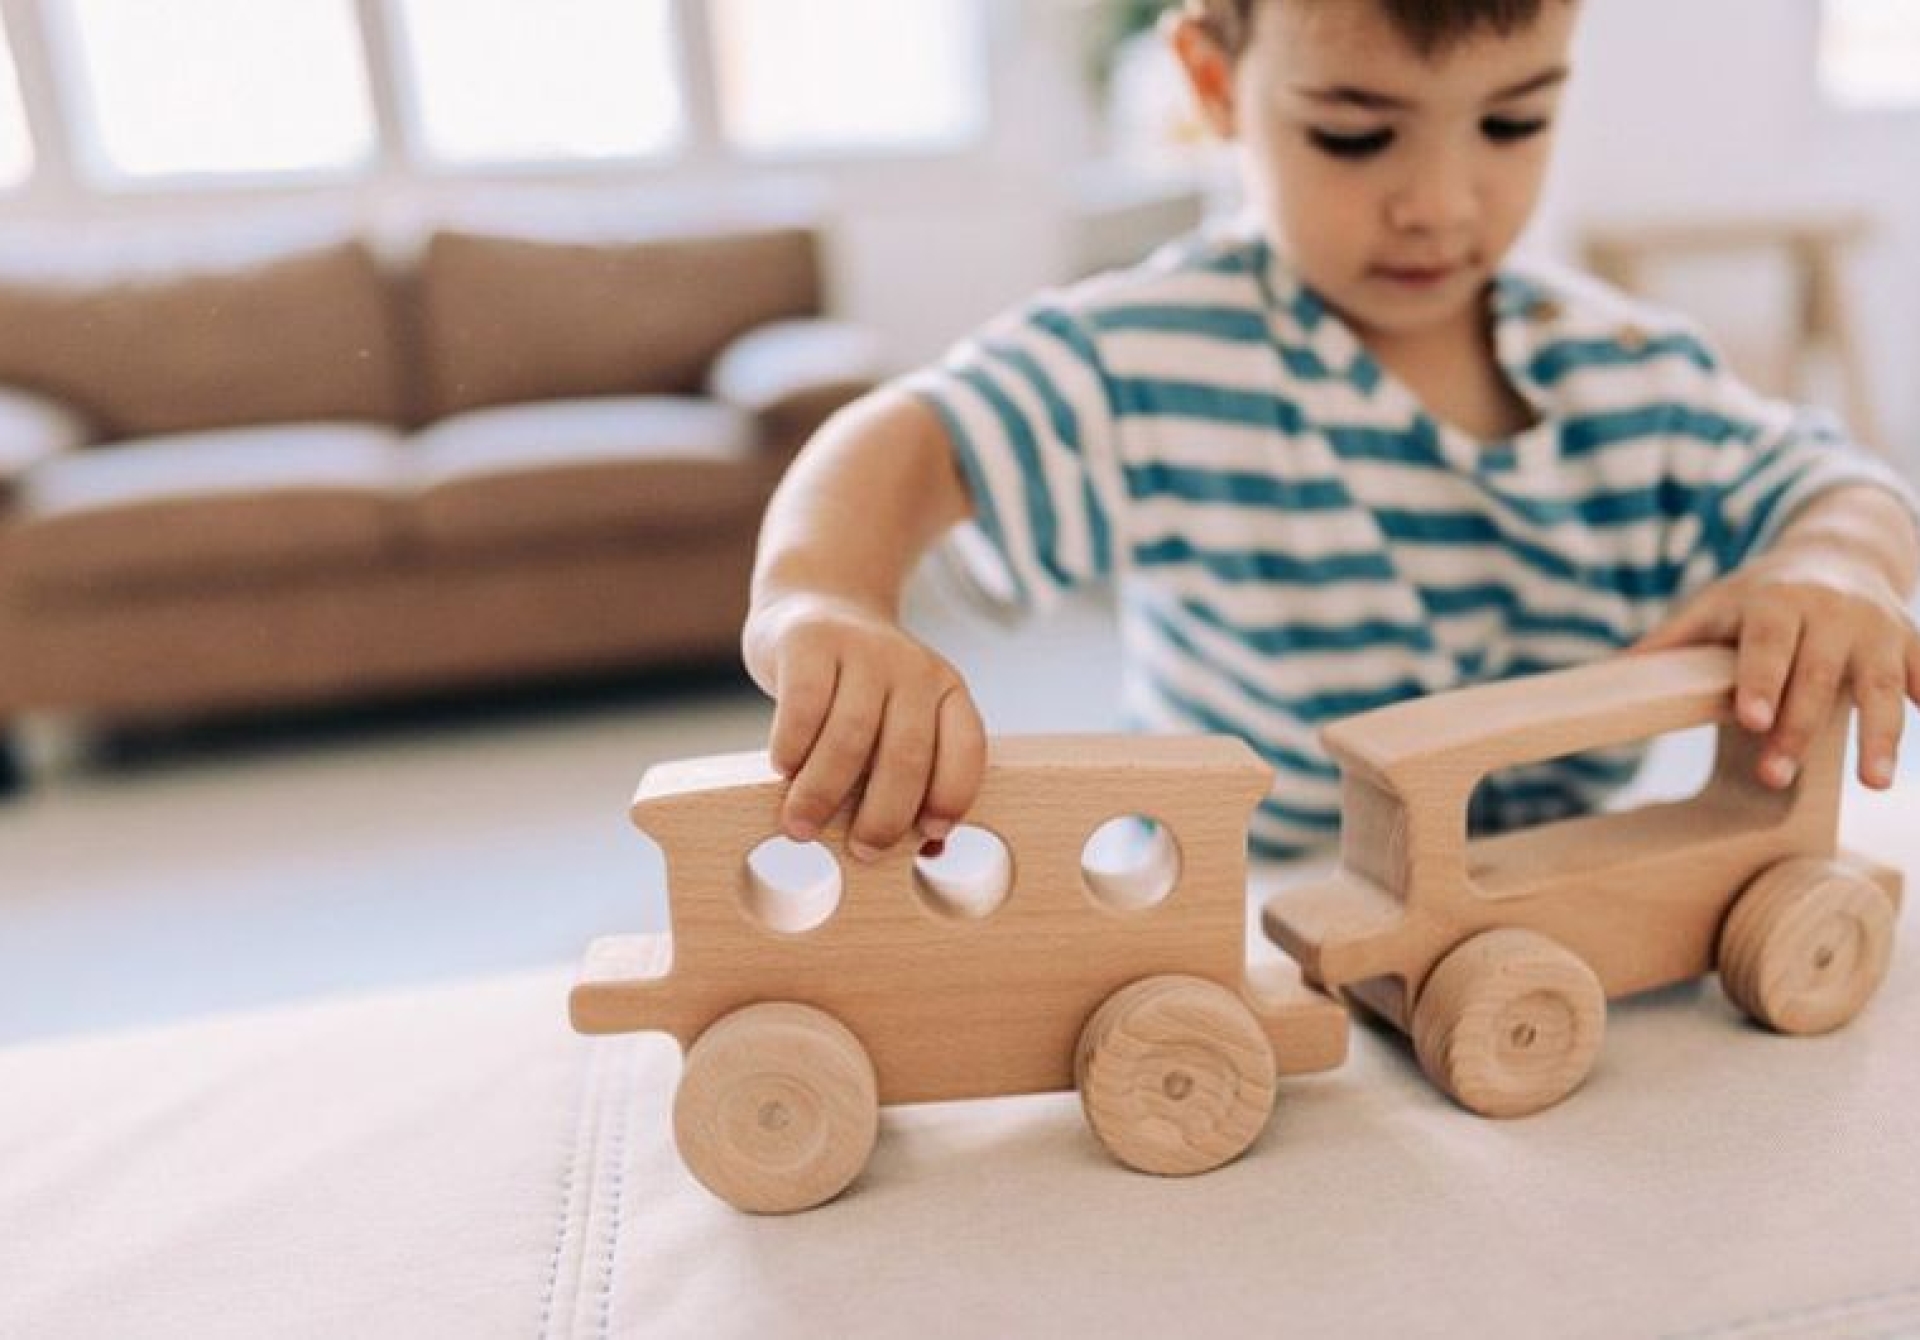 ▷ ¿Cómo la donación de juguetes puede estimular la imaginación y la creatividad de los niños menos privilegiados?